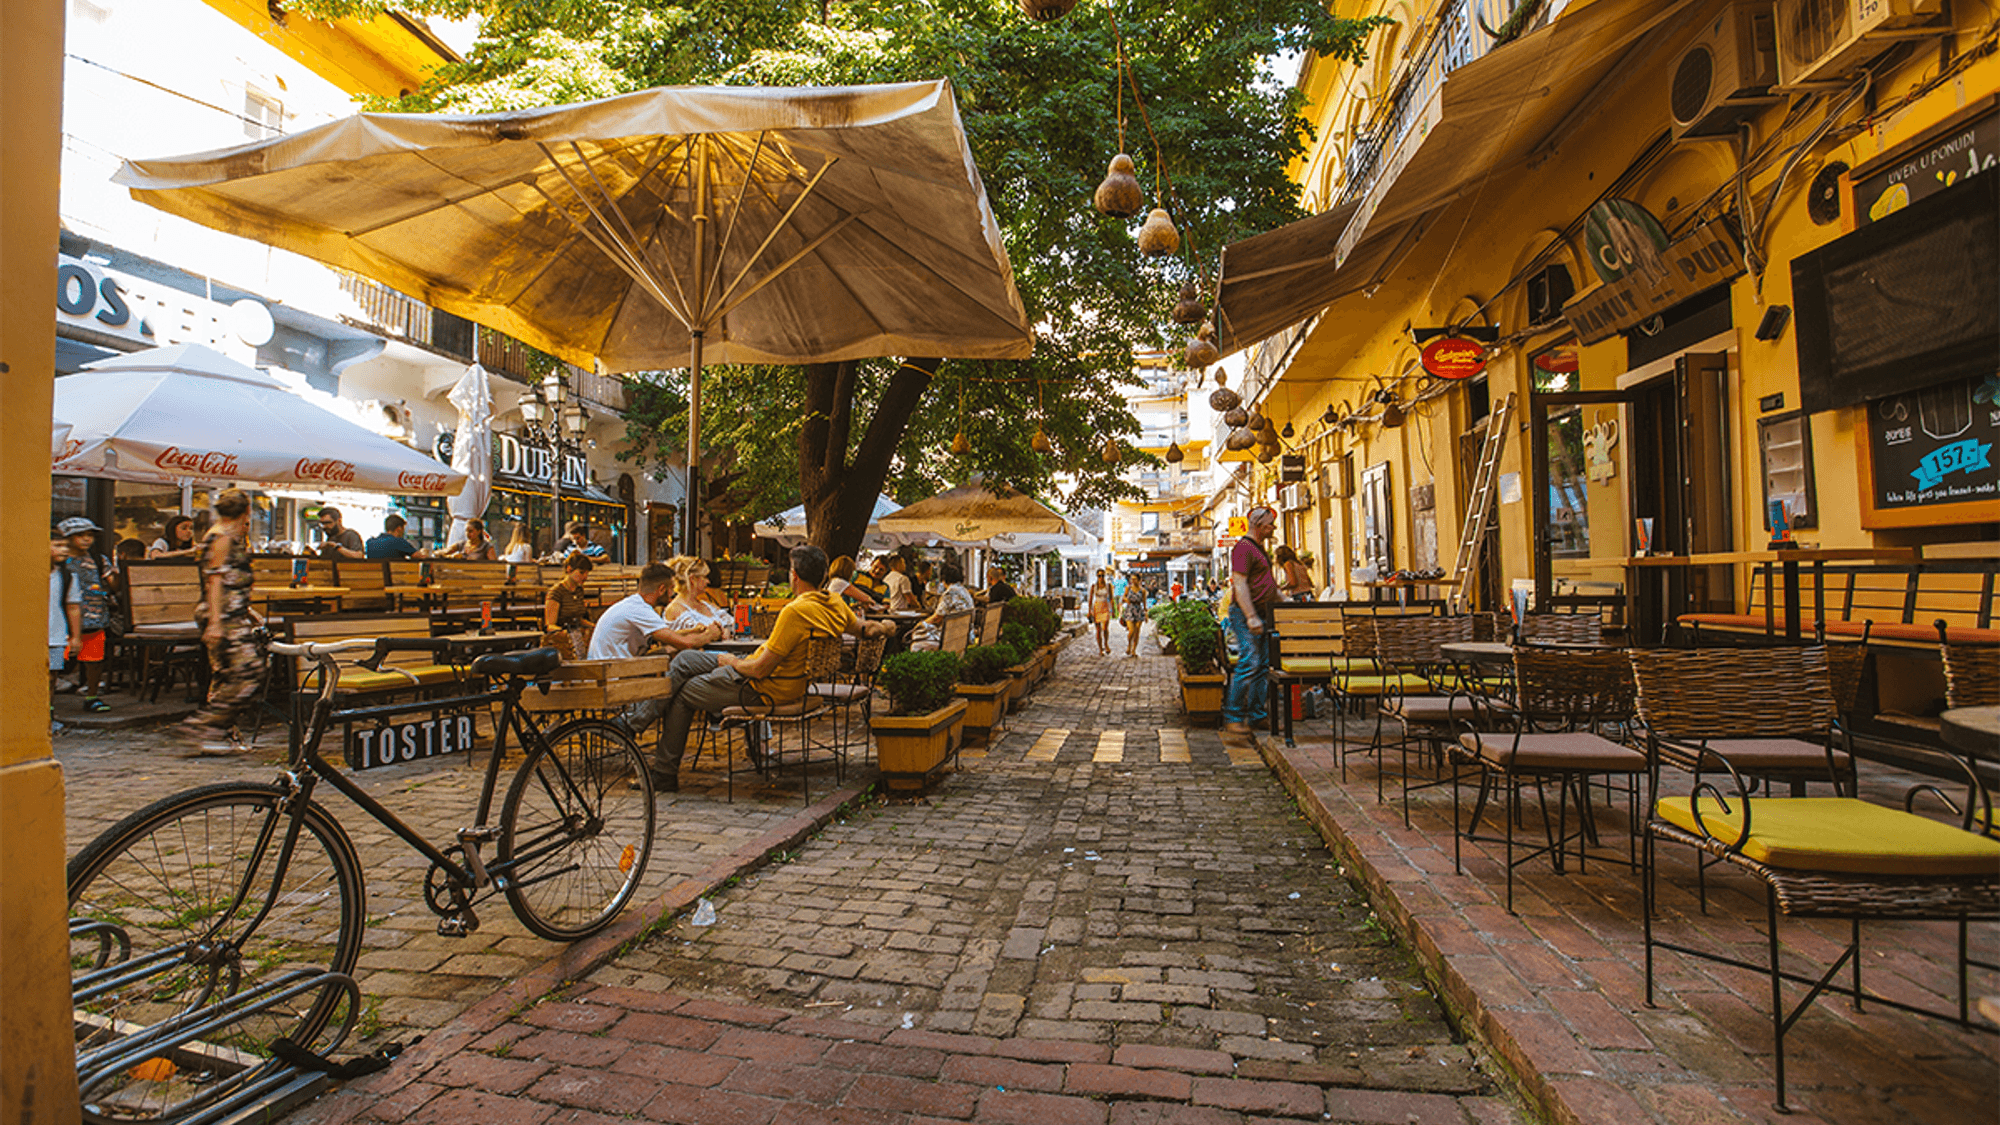 Restaurant scene in Novi Sad